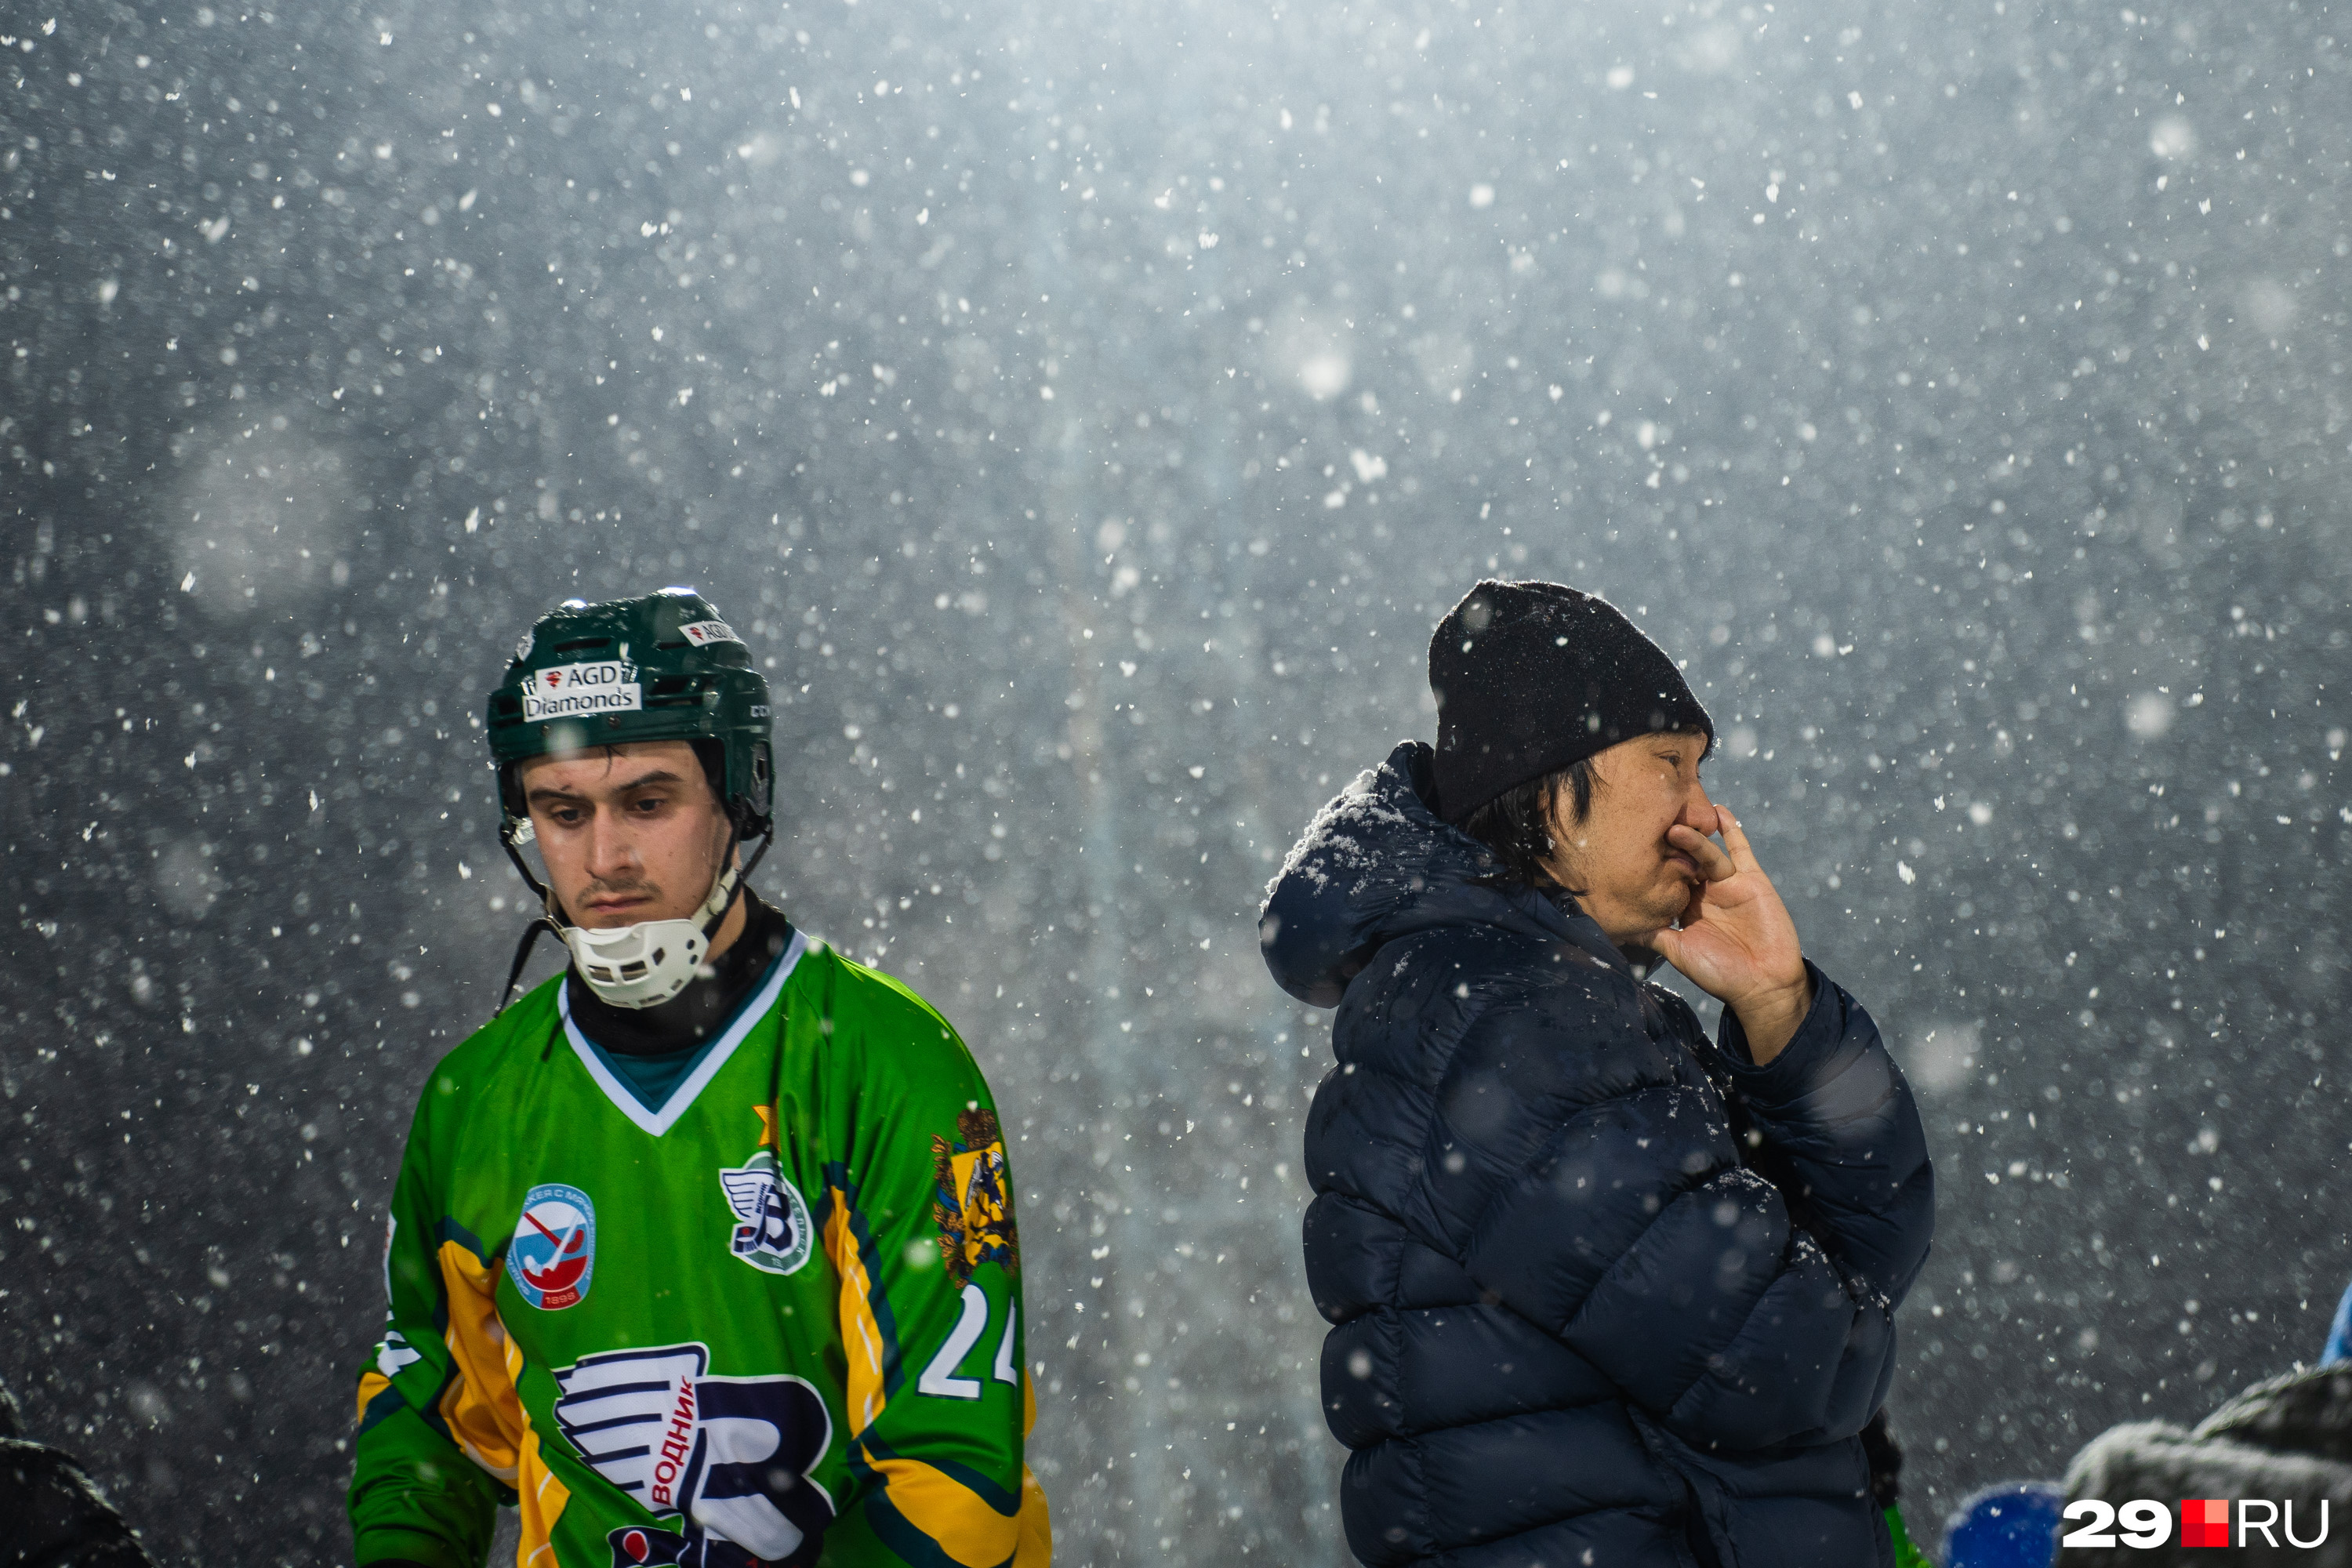 Главный тренер «Водника» Ильяс Хандаев на пресс-конференции после матча сказал, что играть в полную силу его ребятам помешала погода